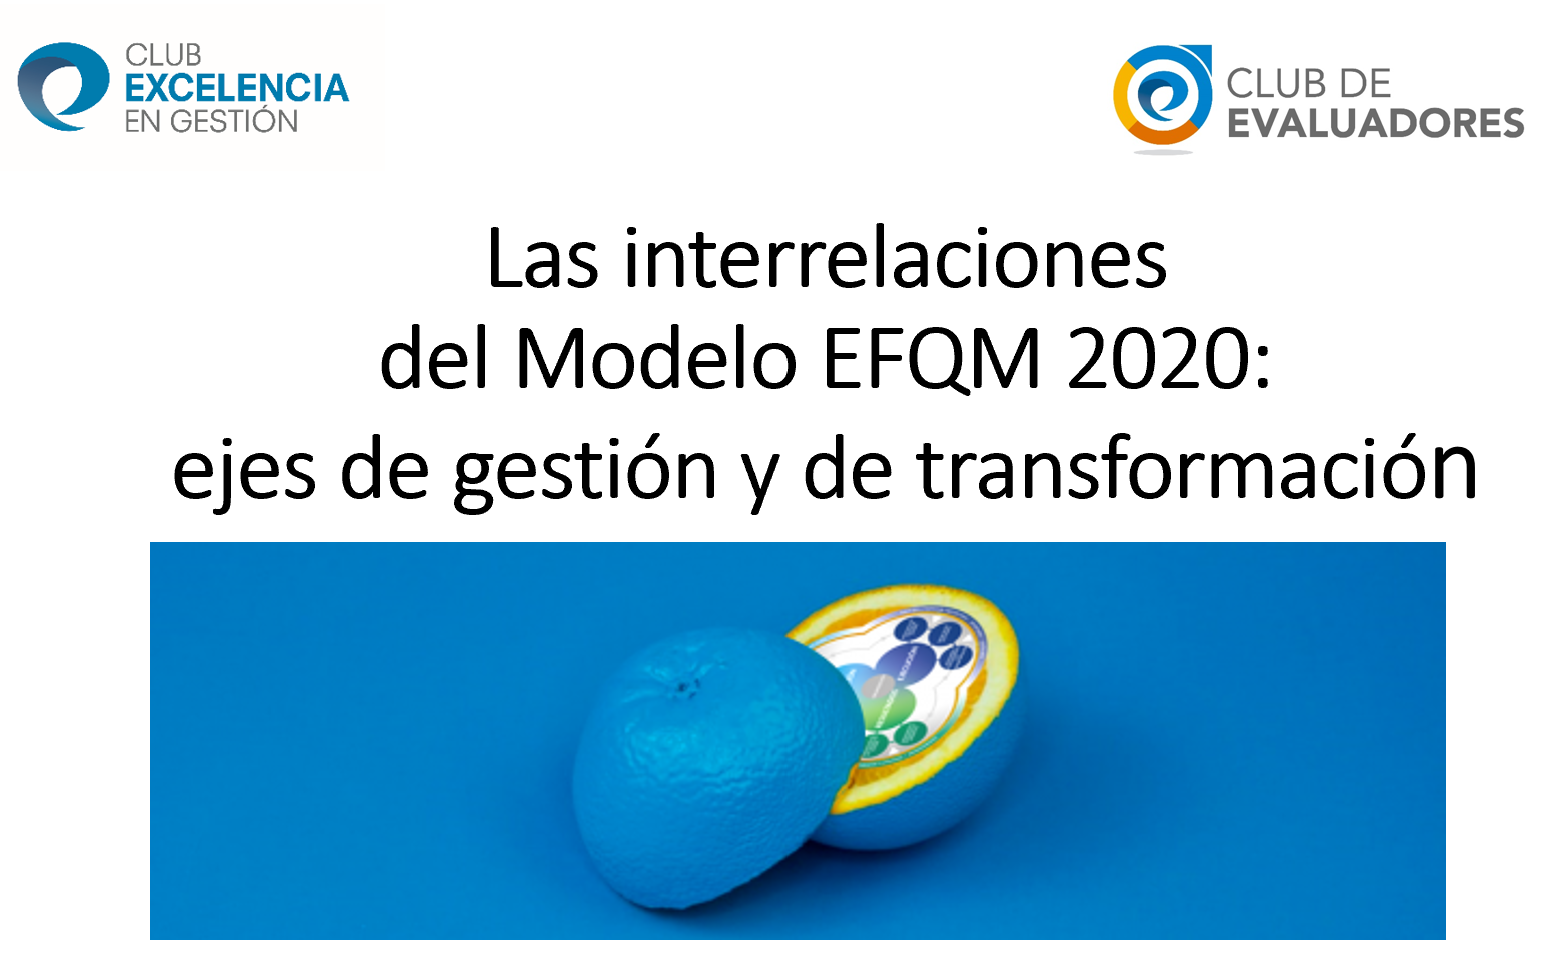 Las interrelaciones del Modelo EFQM 2020 - ejes de gestión y de transformación